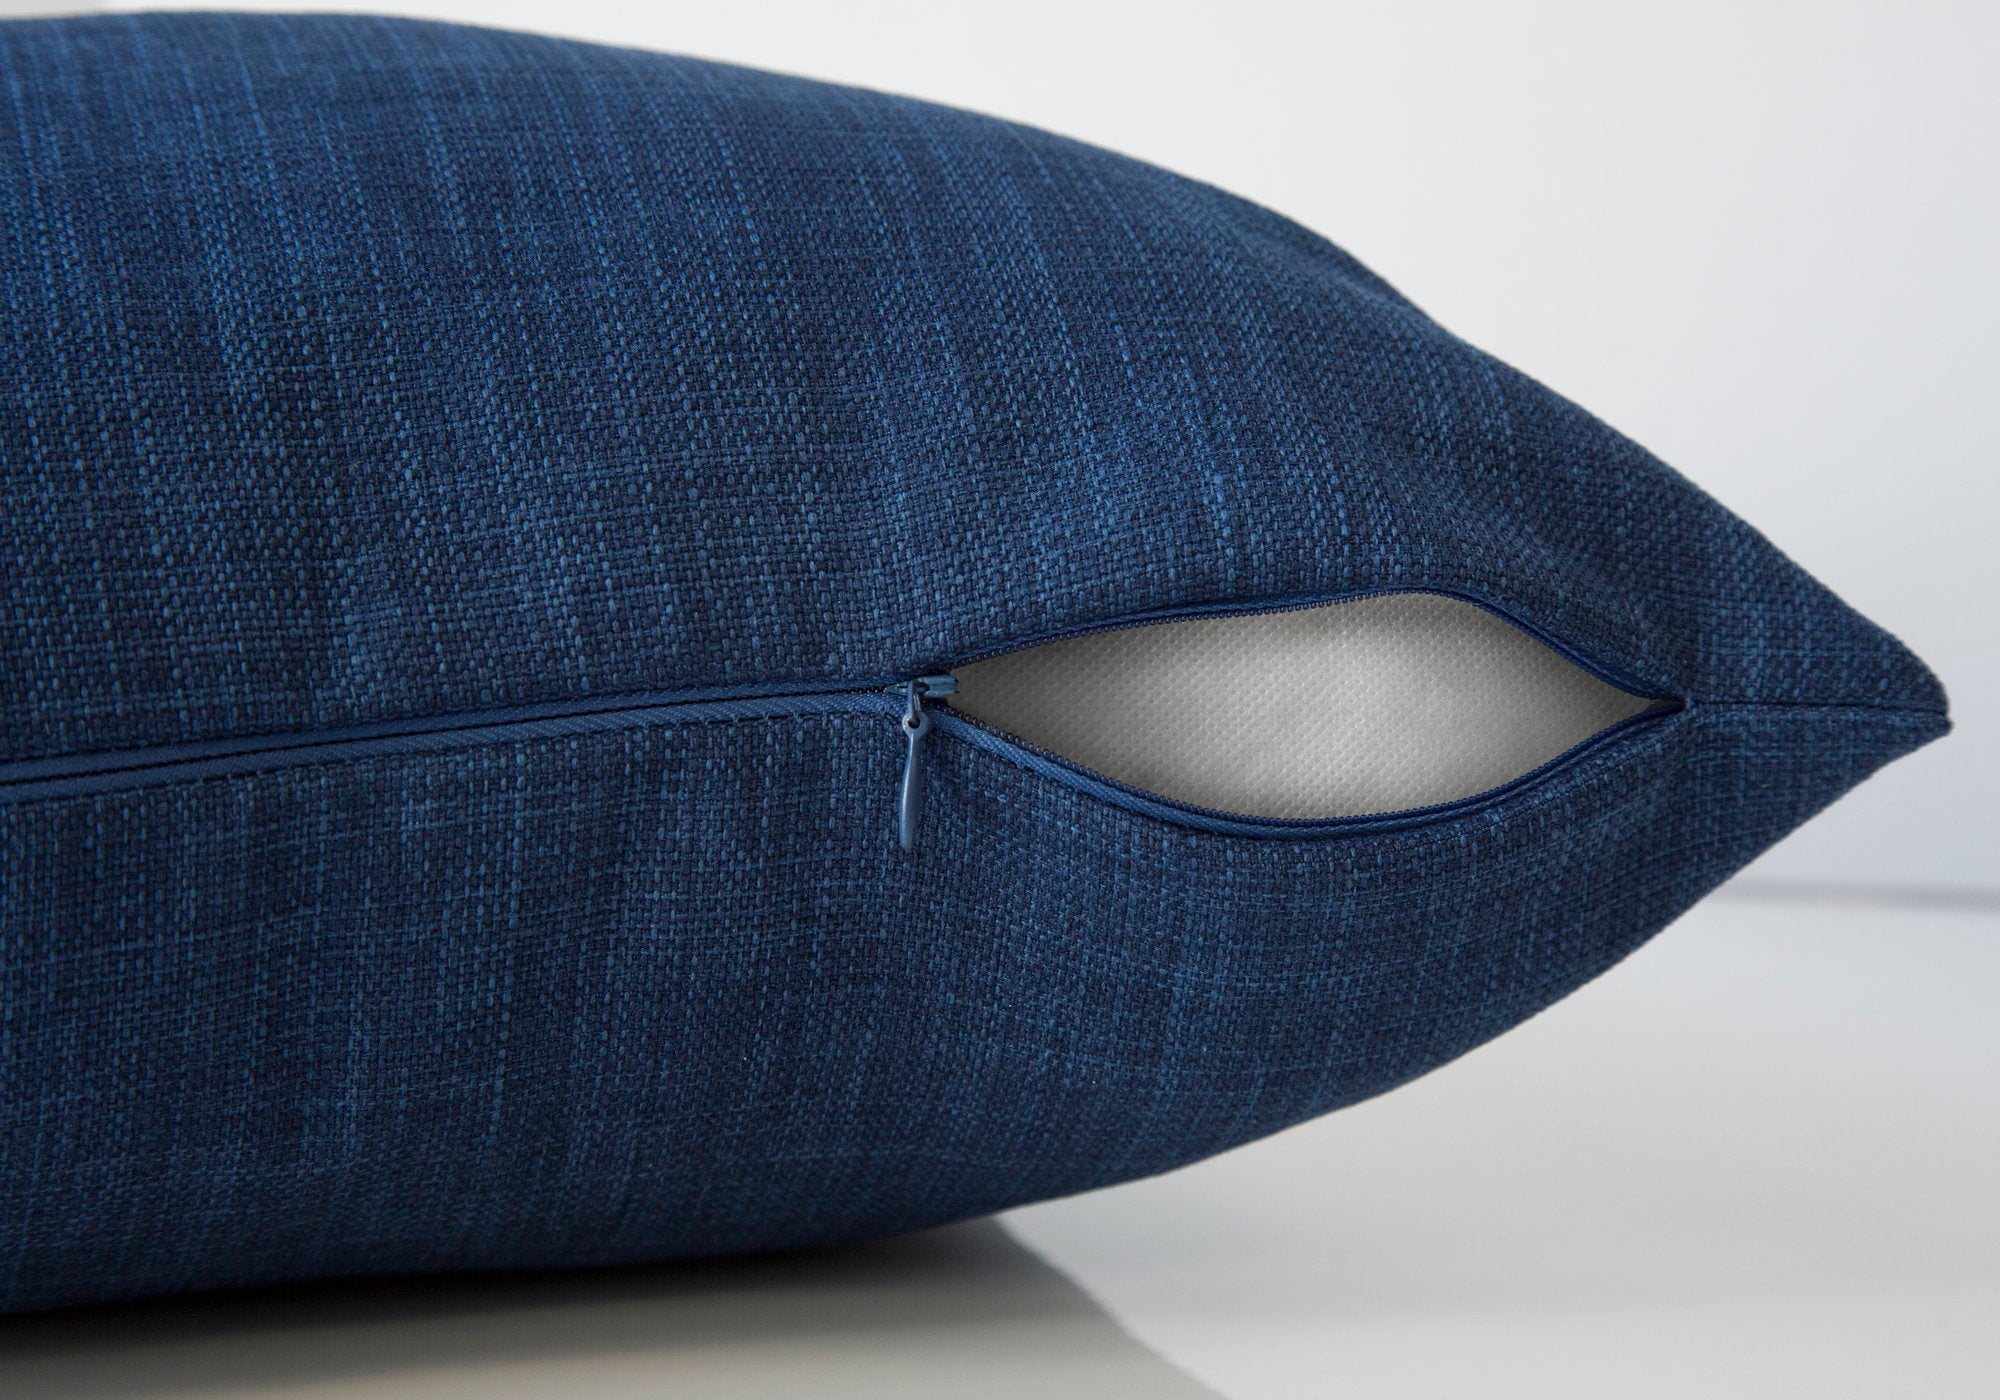 Pillow - 18X 18 / Linen Patterned Dark Blue / 1Pc